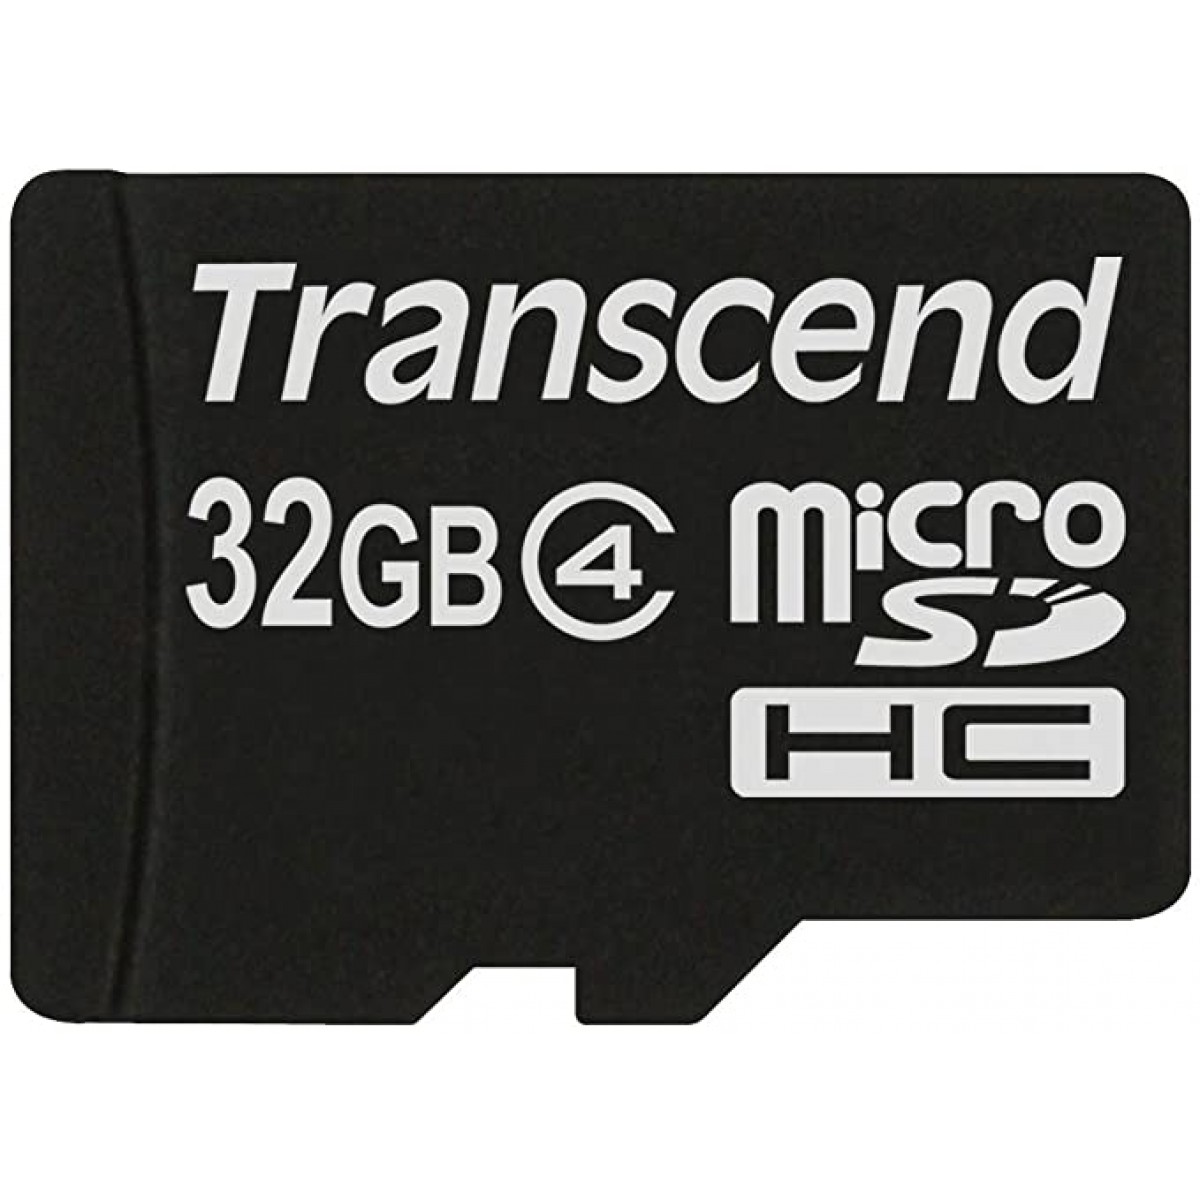 MICRO SDHC TRANSCEND 32GB CLASS 4 TS32GUSDC4